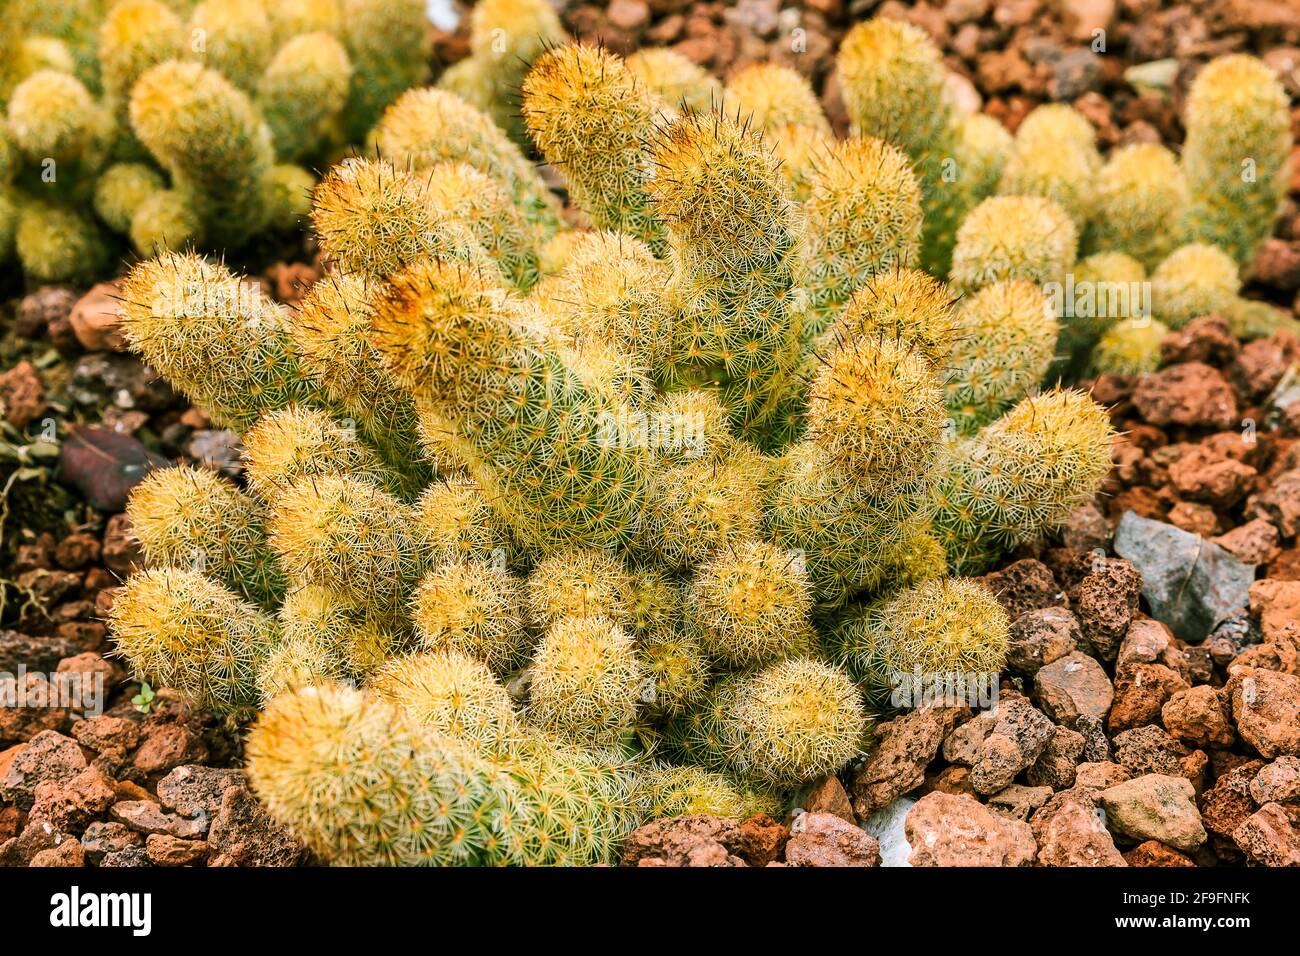 Dettaglio scatto di Mammillaria elongata cactus su terreno lapideo in autunno. Paese di origine Guanajuato Messico nelle Americhe. Molte spine luminose sul p Foto Stock